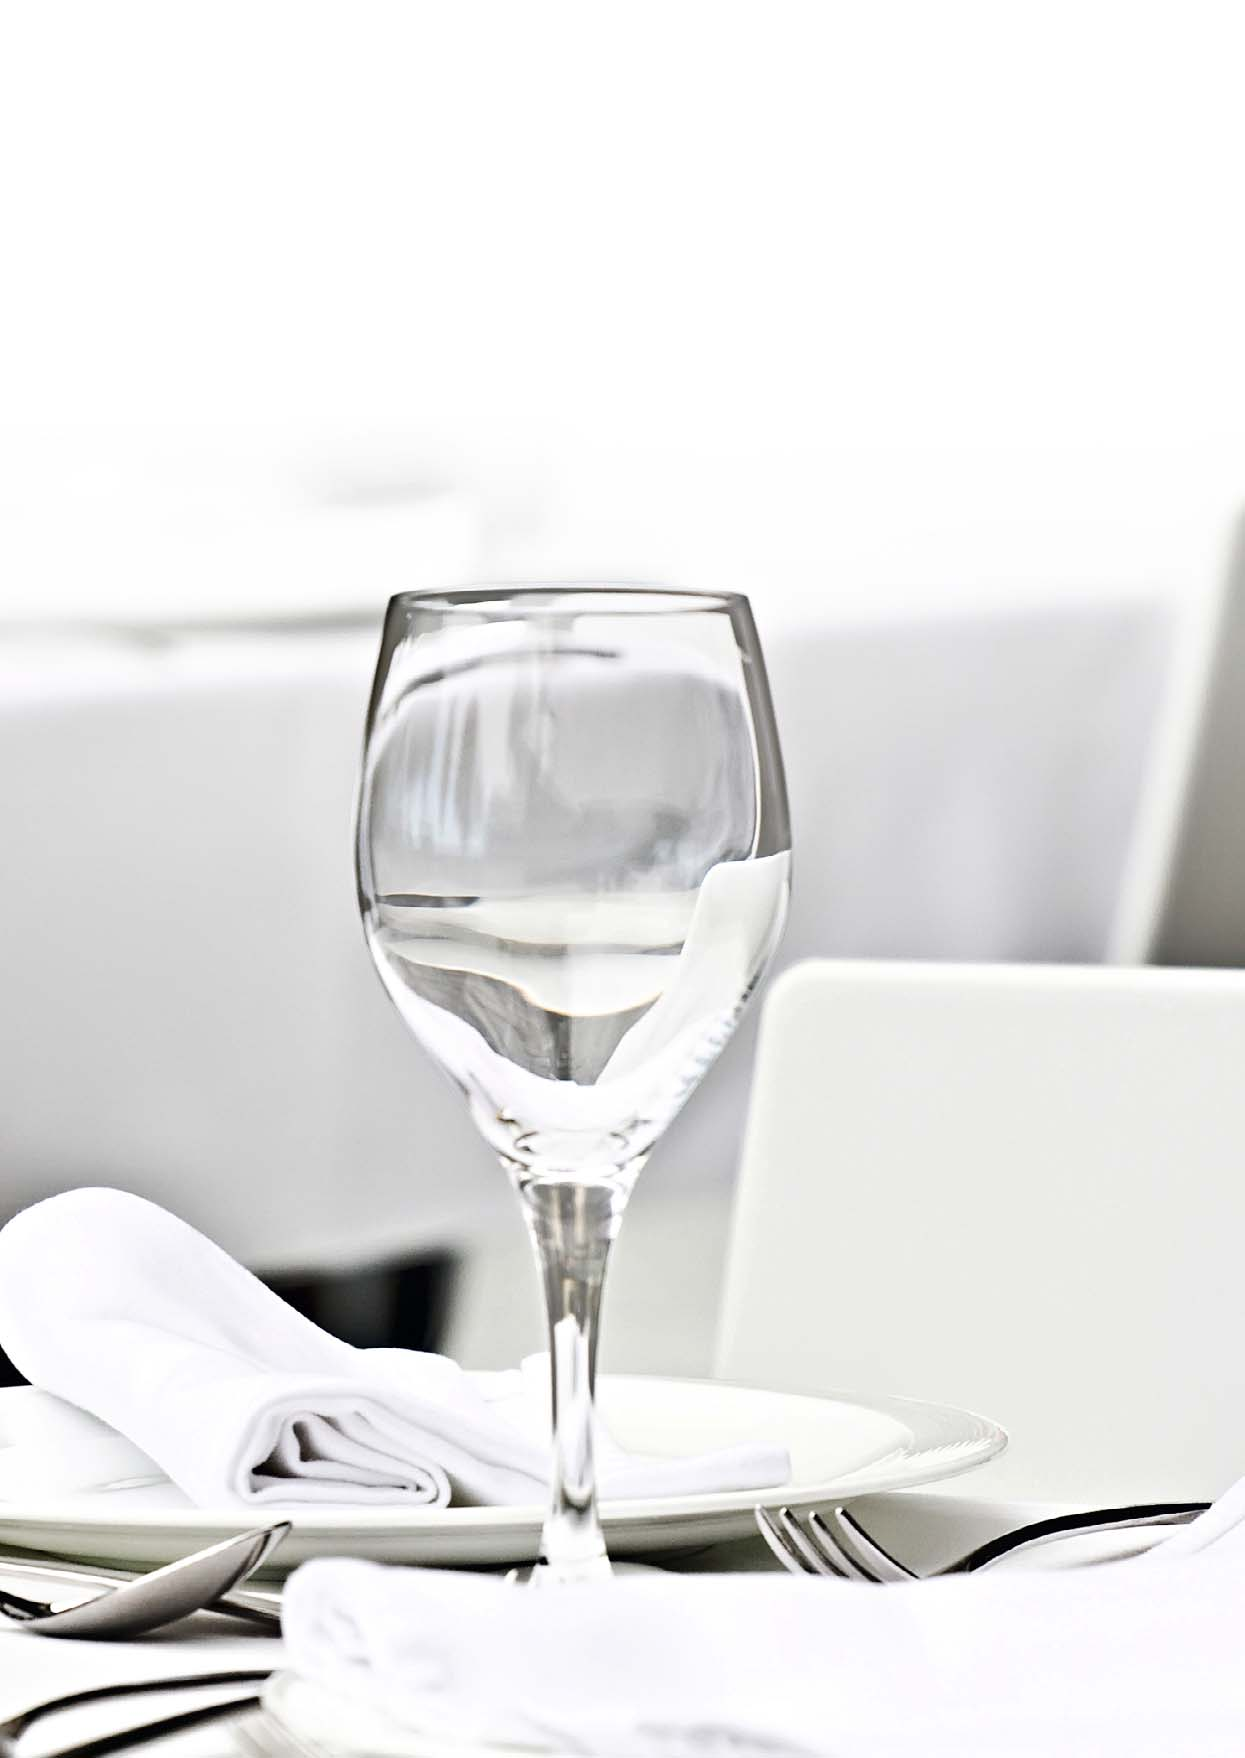 La vue joue un rôle important dans la gastronomie. Une vaisselle parfaitement propre est donc une condition pour que les mets et boissons mettent en appétit.